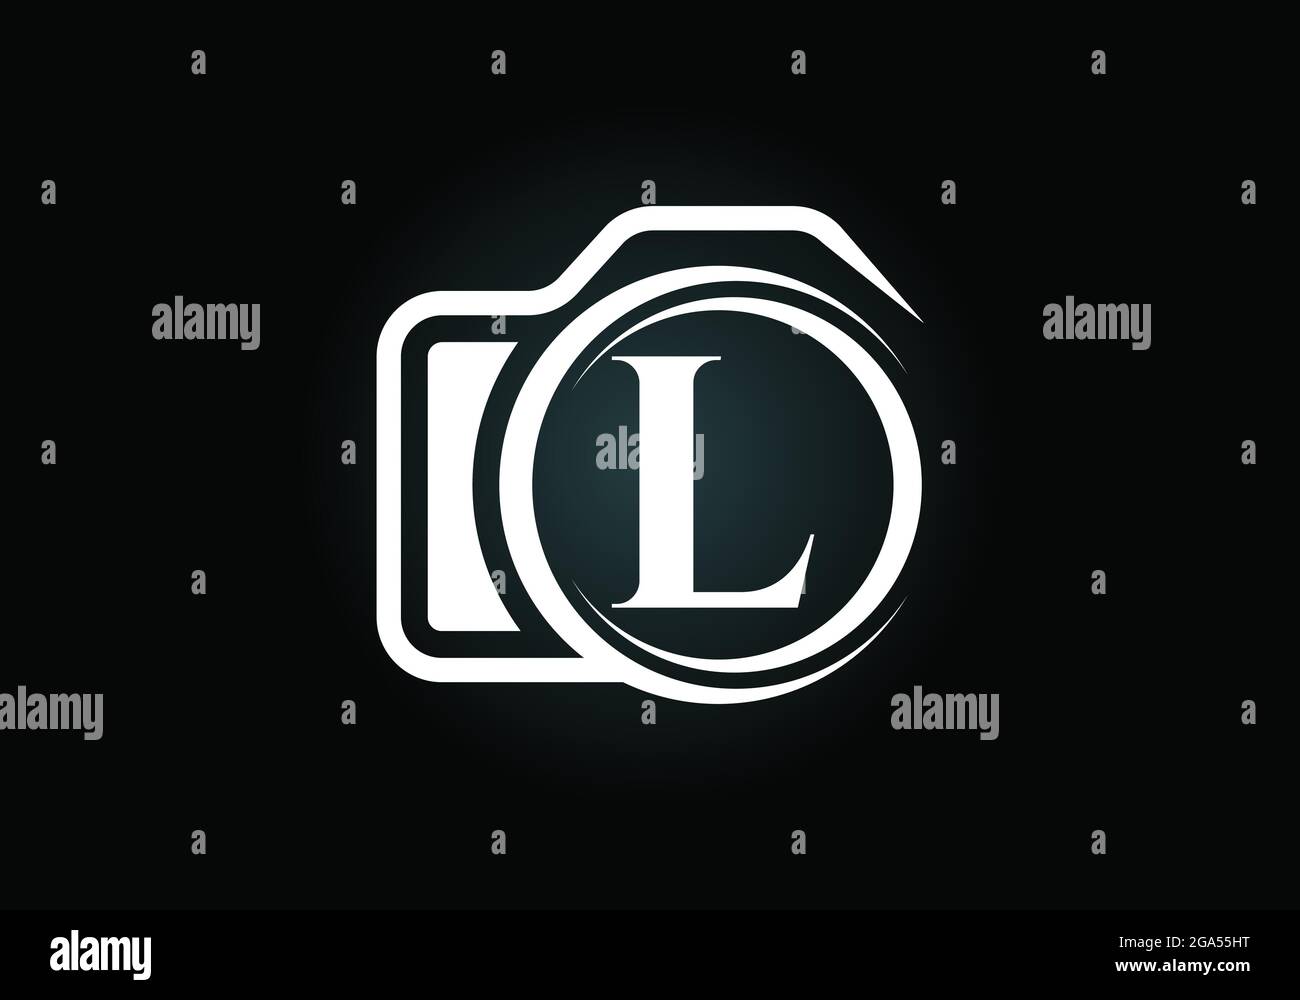 Lettera iniziale del monogramma L con l'icona di una telecamera. Immagine vettoriale del logo fotografico. Design moderno del logo per il settore della fotografia e l'azienda Illustrazione Vettoriale